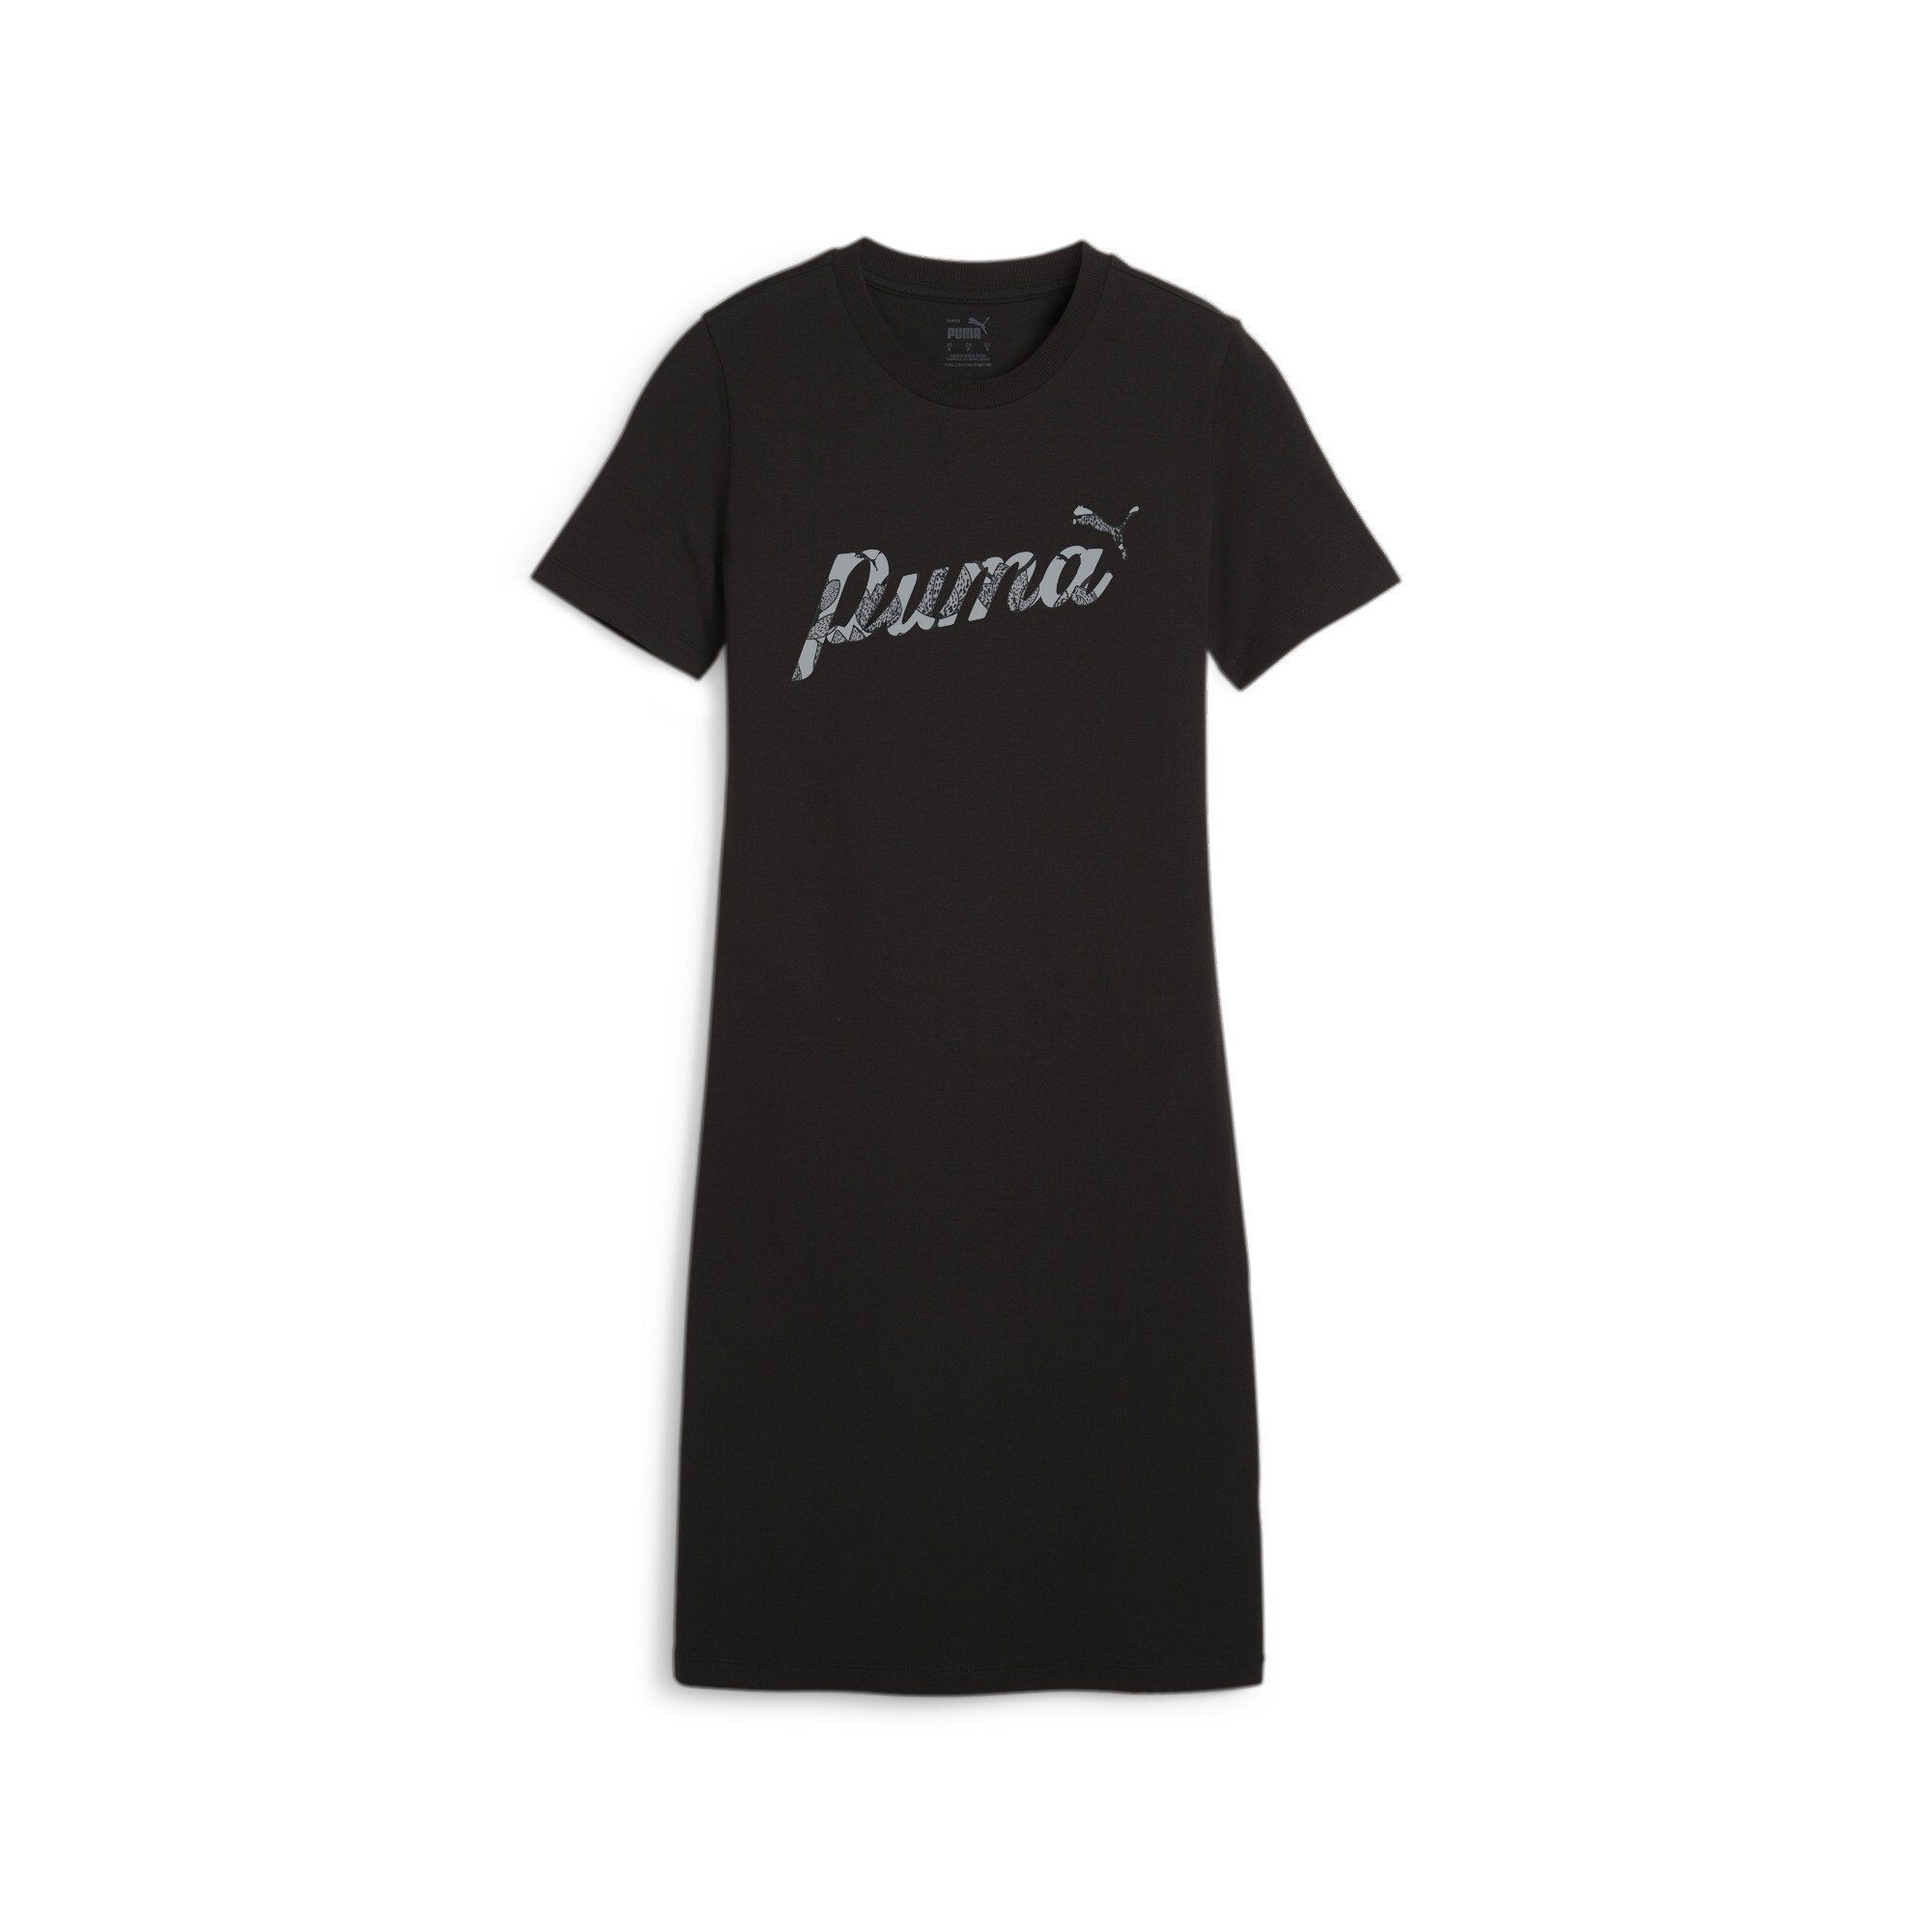 PUMA Sweatkleider für Damen online kaufen | OTTO